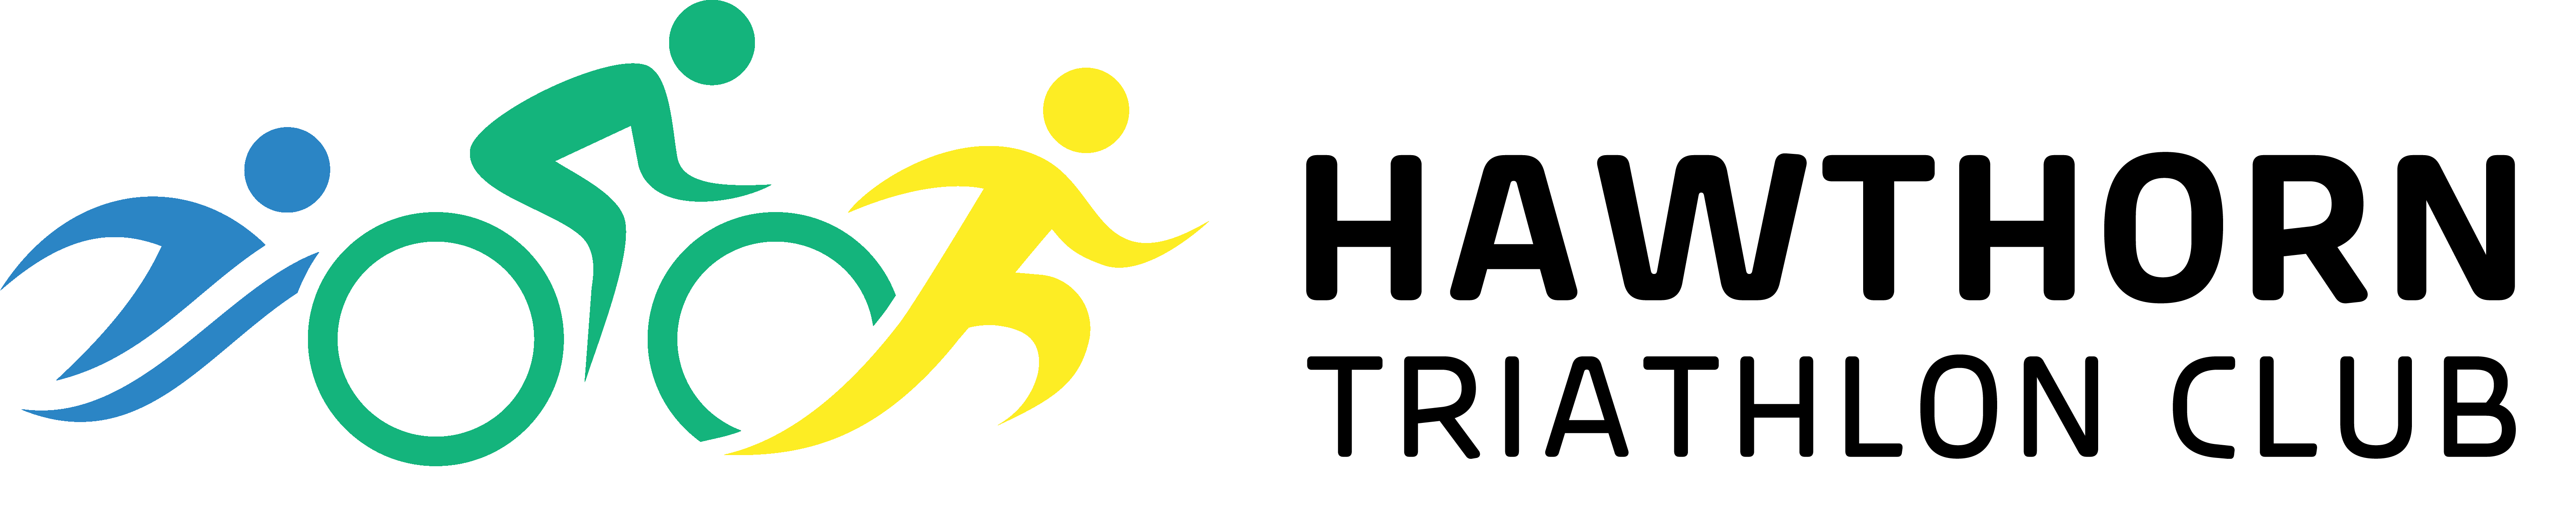 Hawthorn Triathlon Club